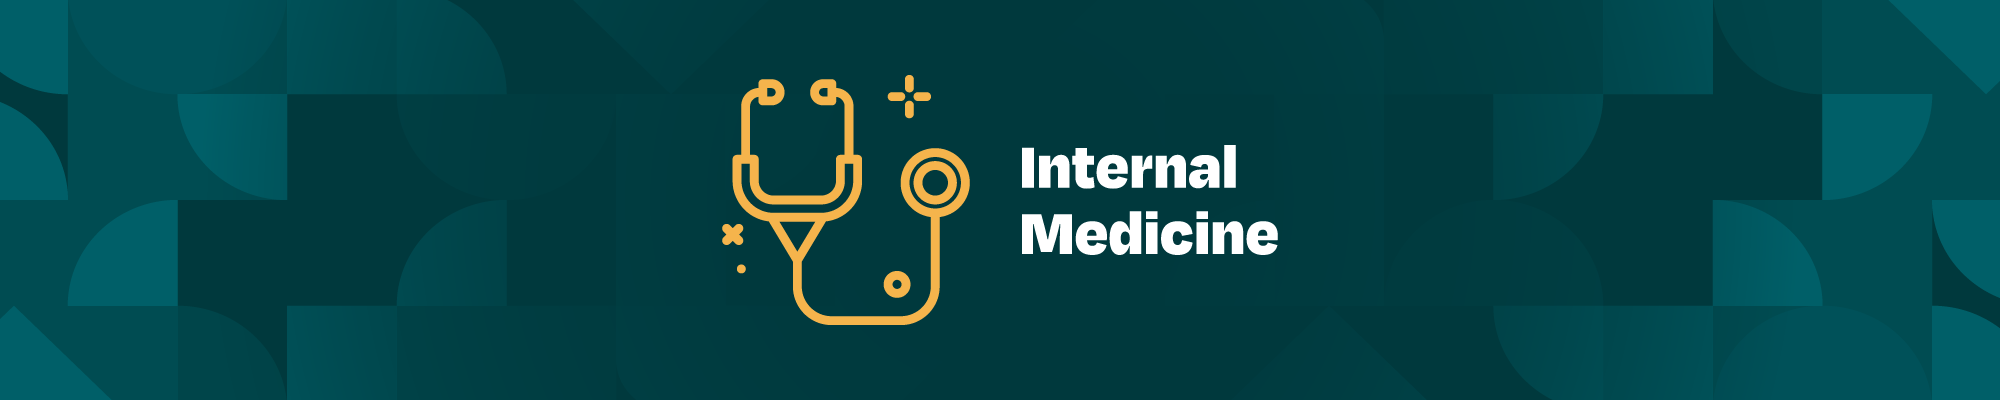 Internal Medicine - Section Baner Newsletter